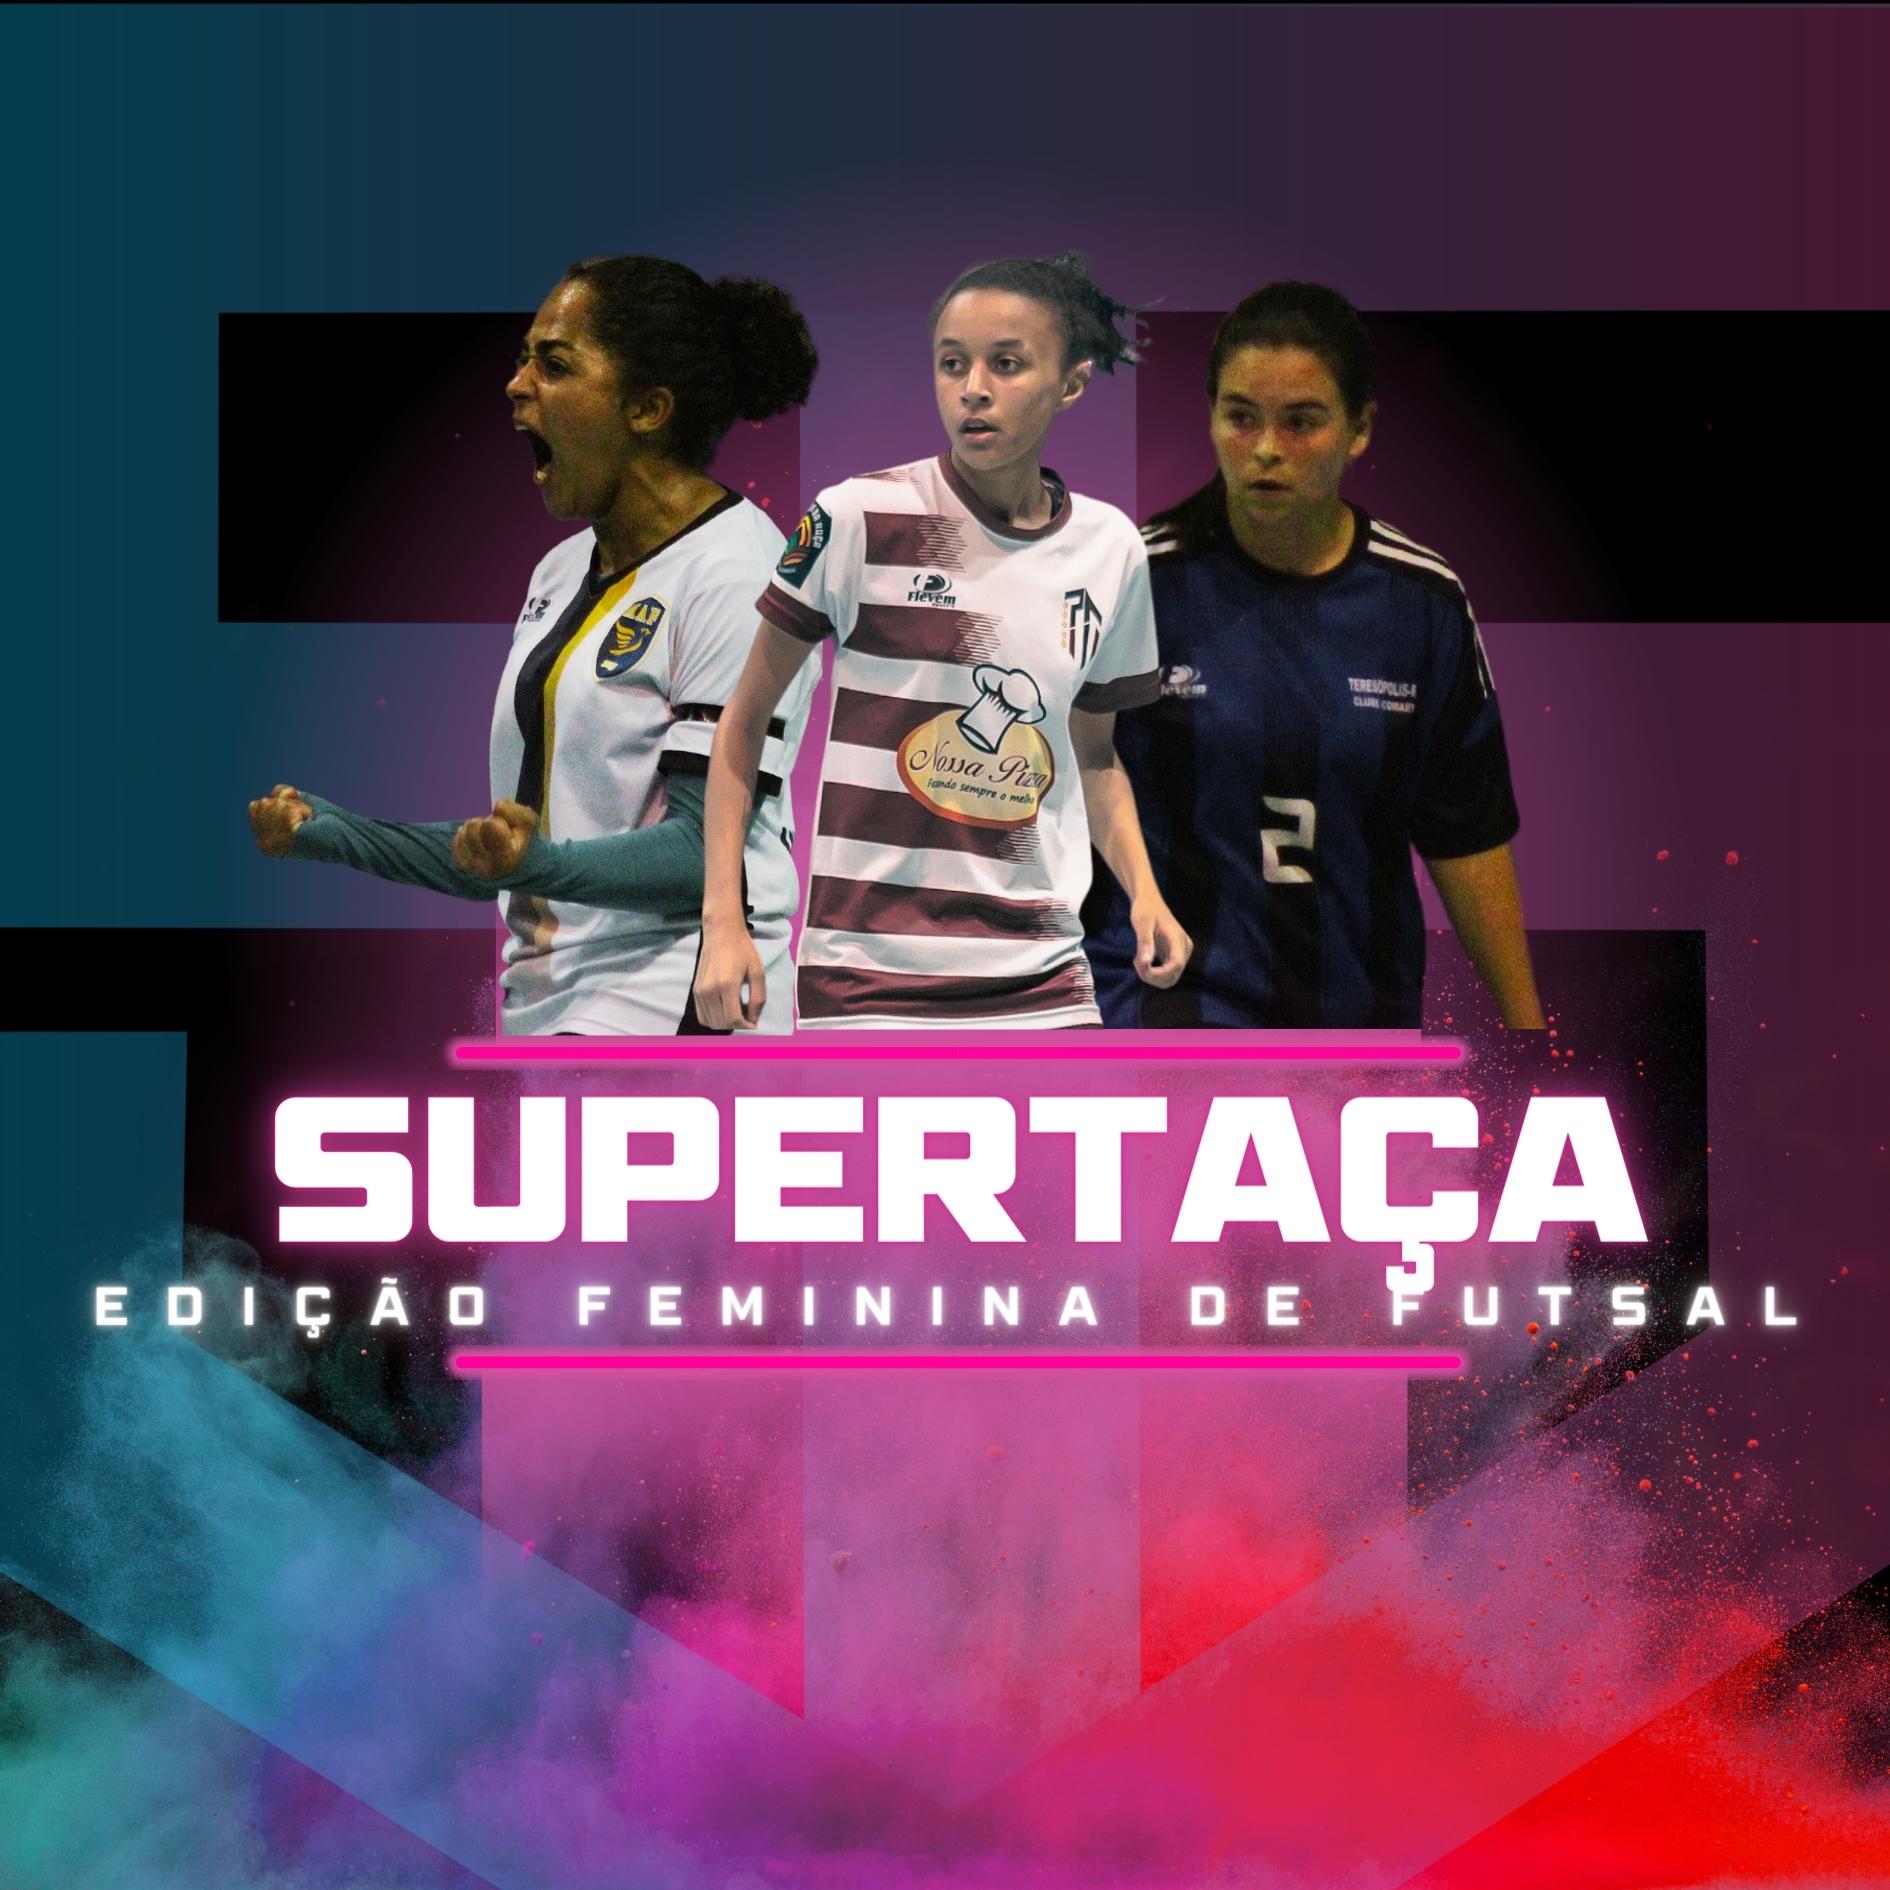 Futsal Feminino: Rodadas, Resultados, Classificação, Artilharia e Cartões